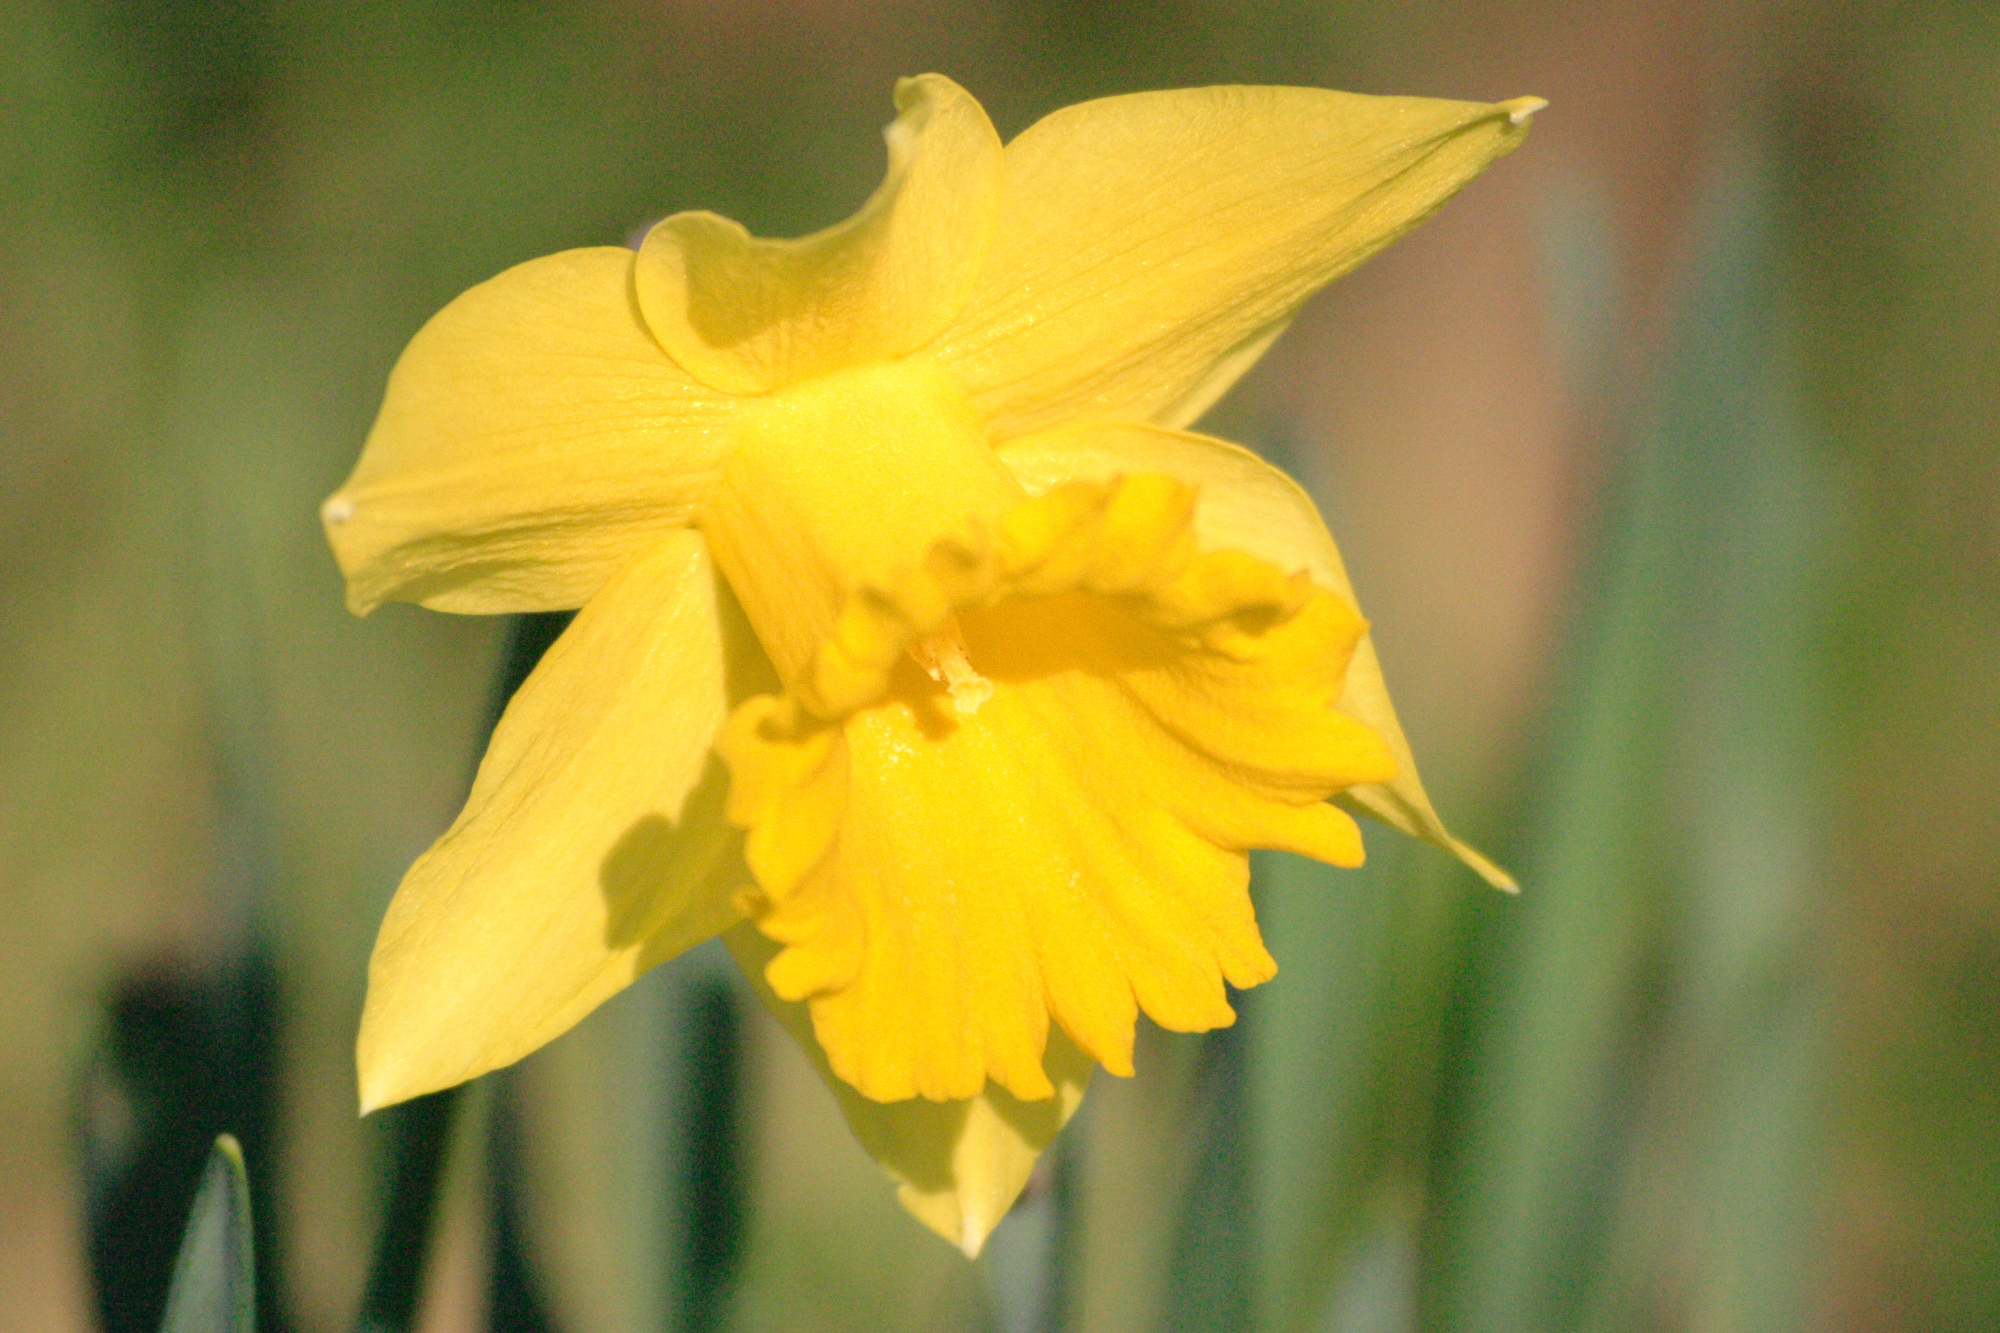 Daffodil in my back yard